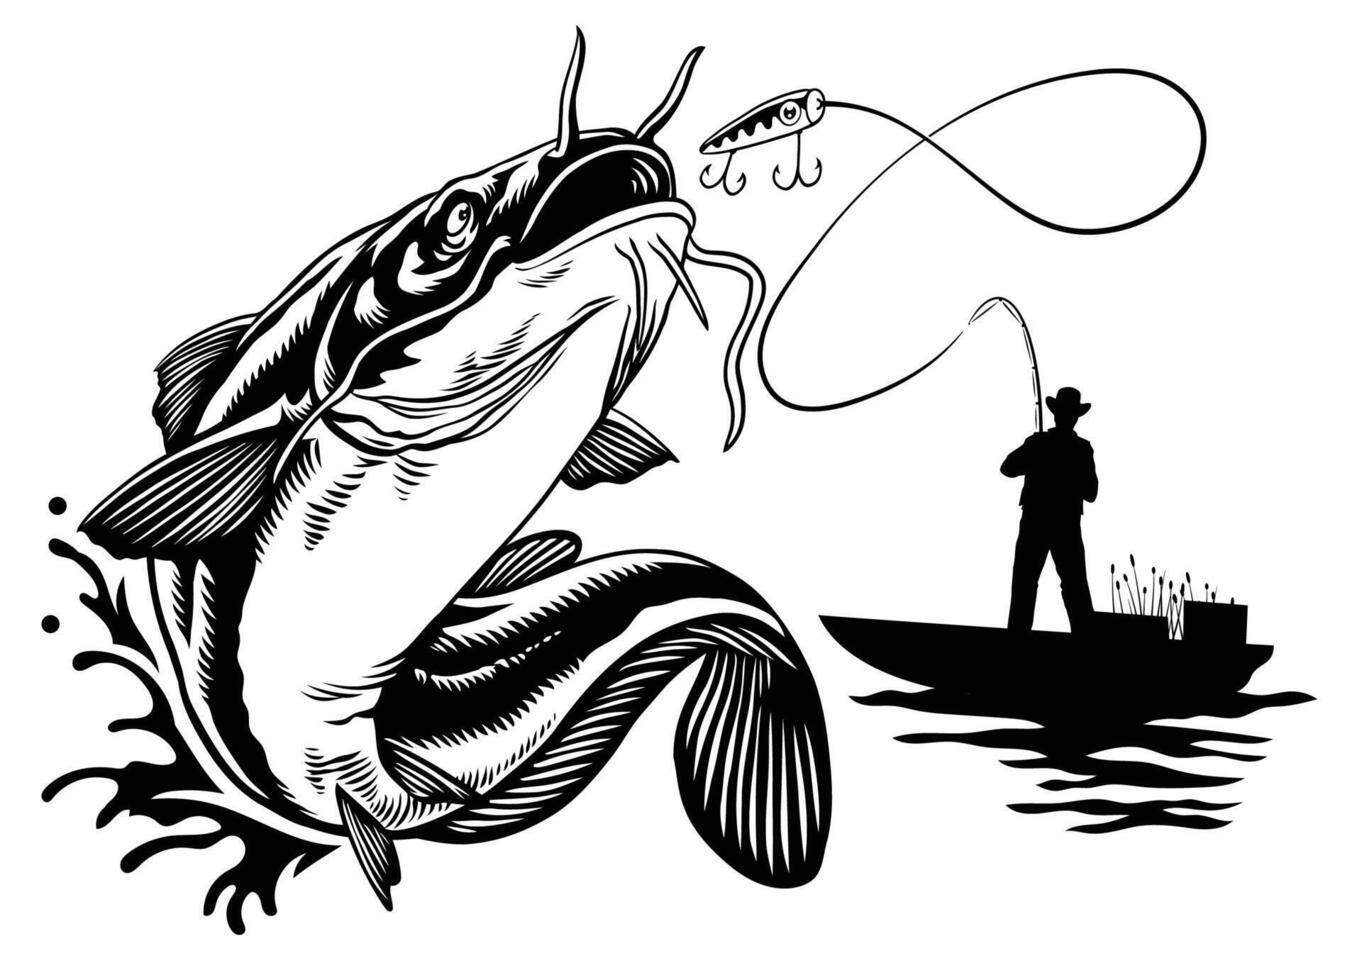 Fischer fangen groß Wels im schwarz und Weiß Stil vektor